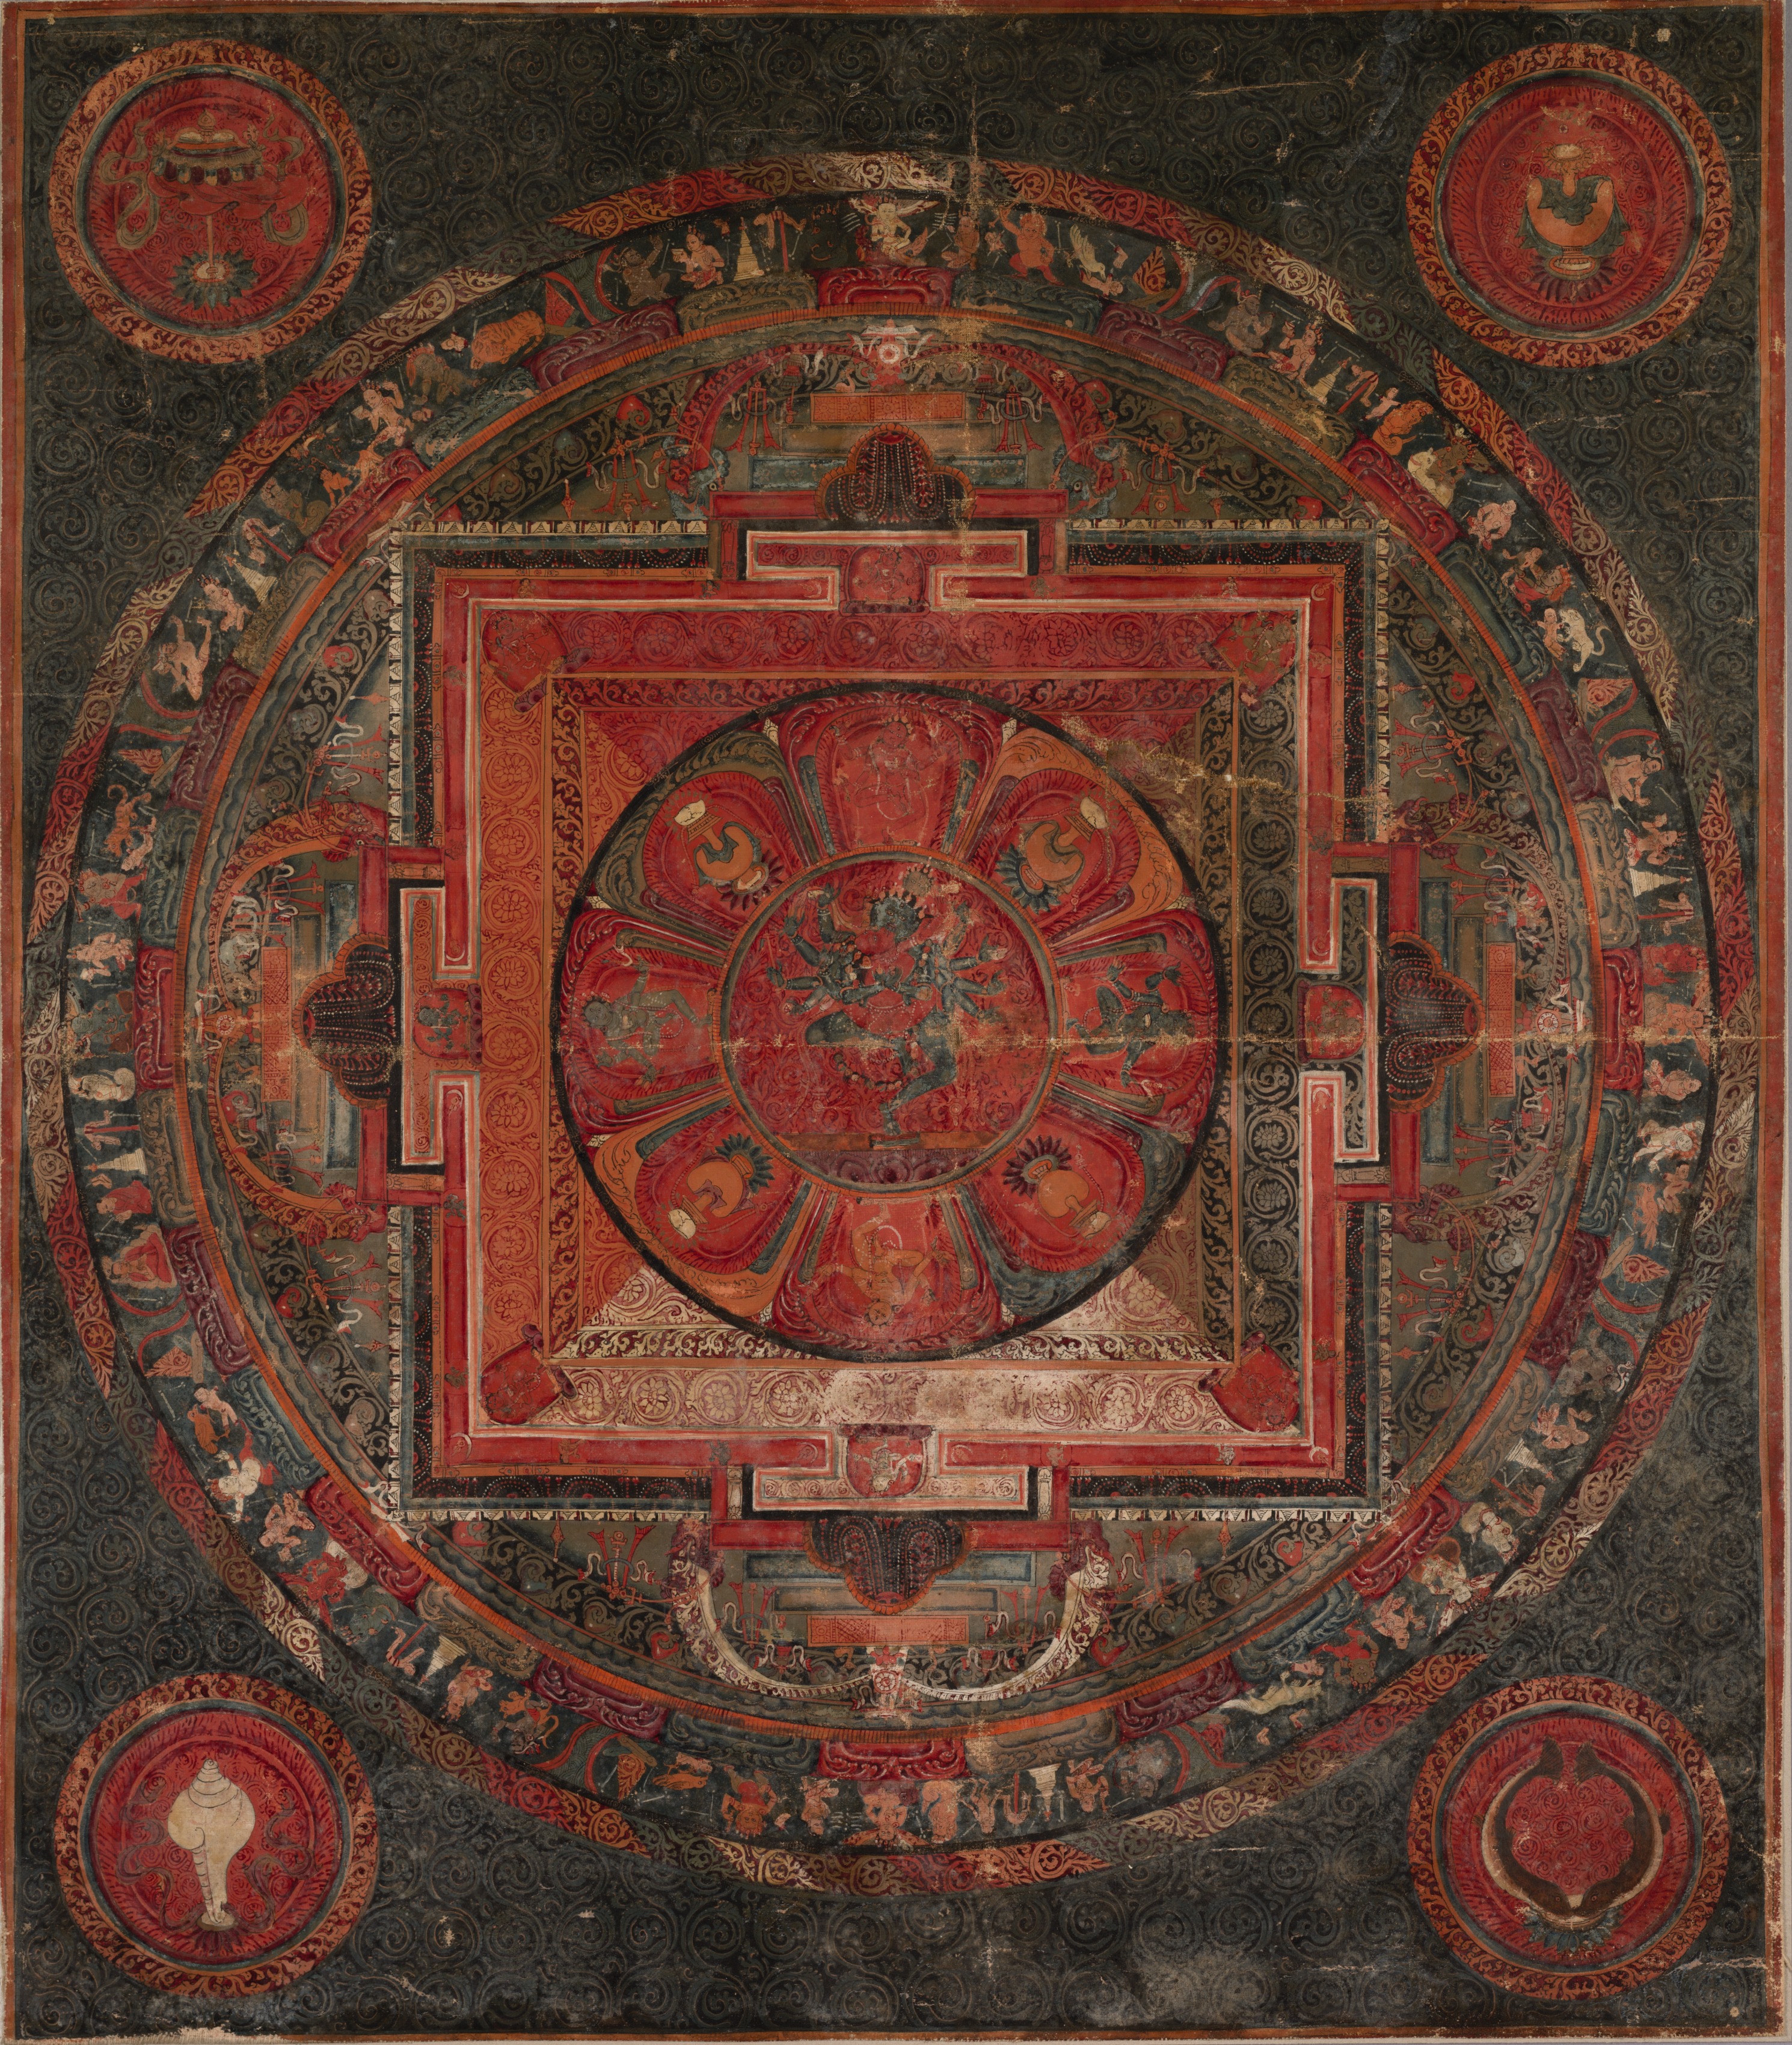 Mandala of Chakrasamvara and Vajravarahi